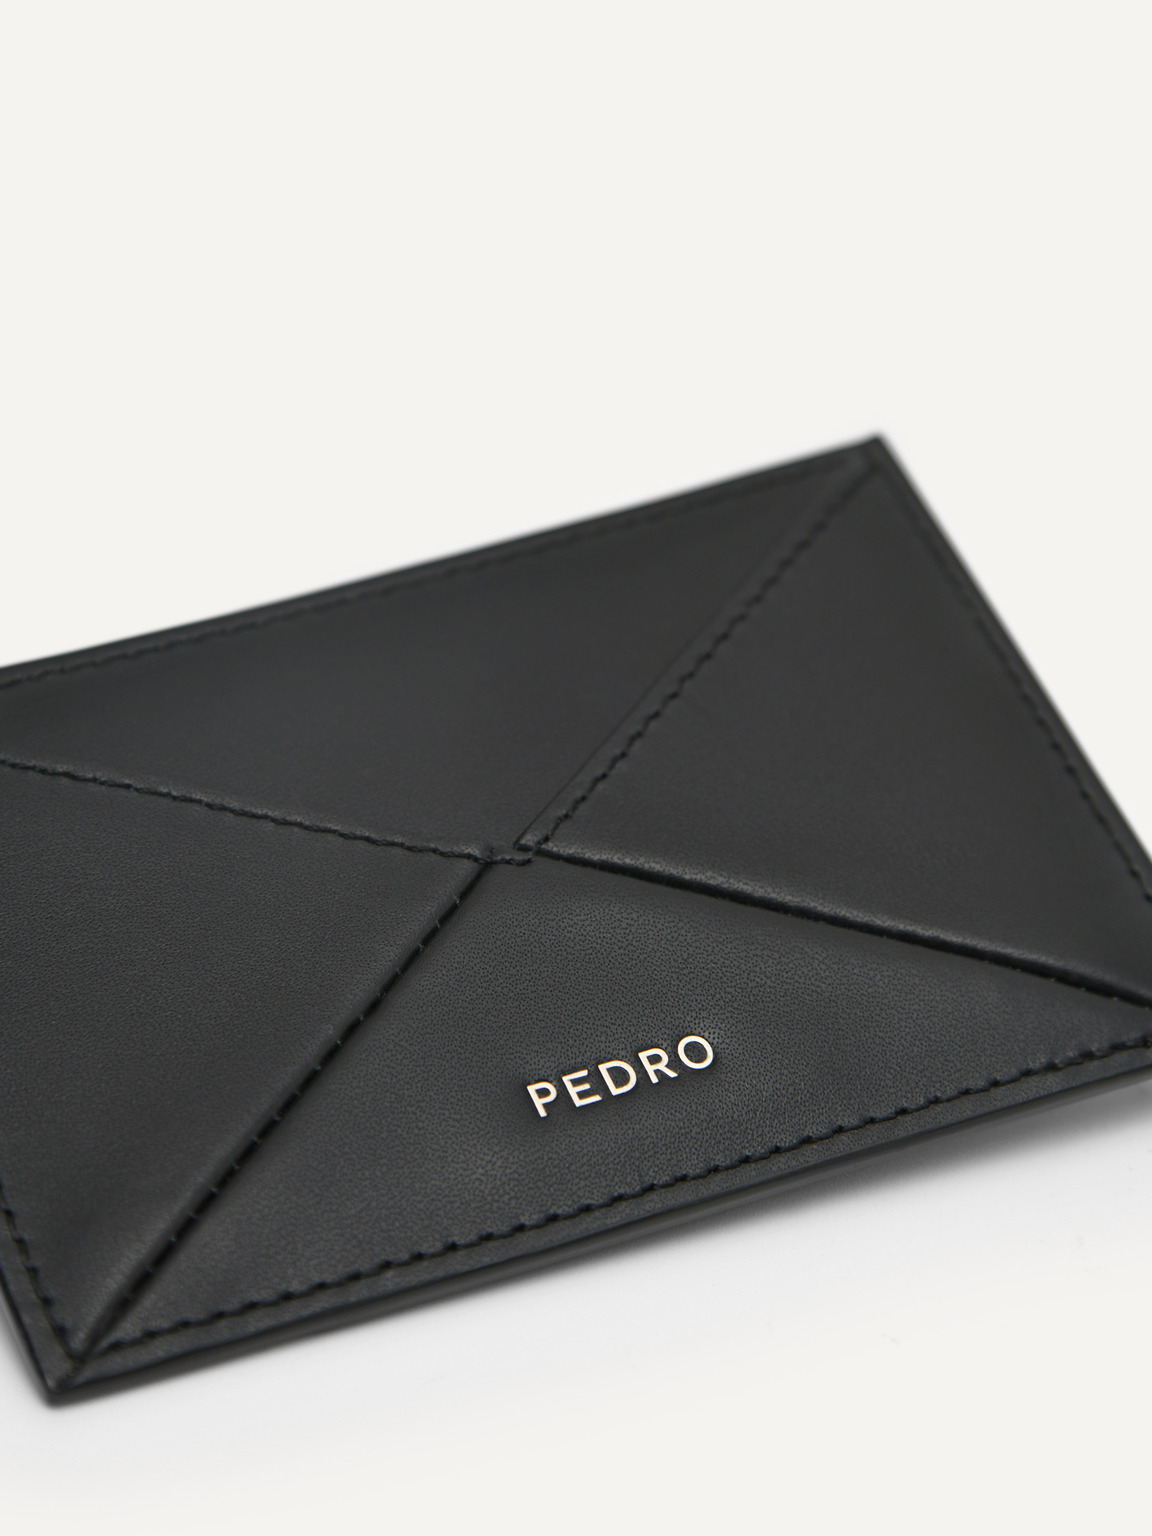 PEDRO工作室皮革卡包, 黑色